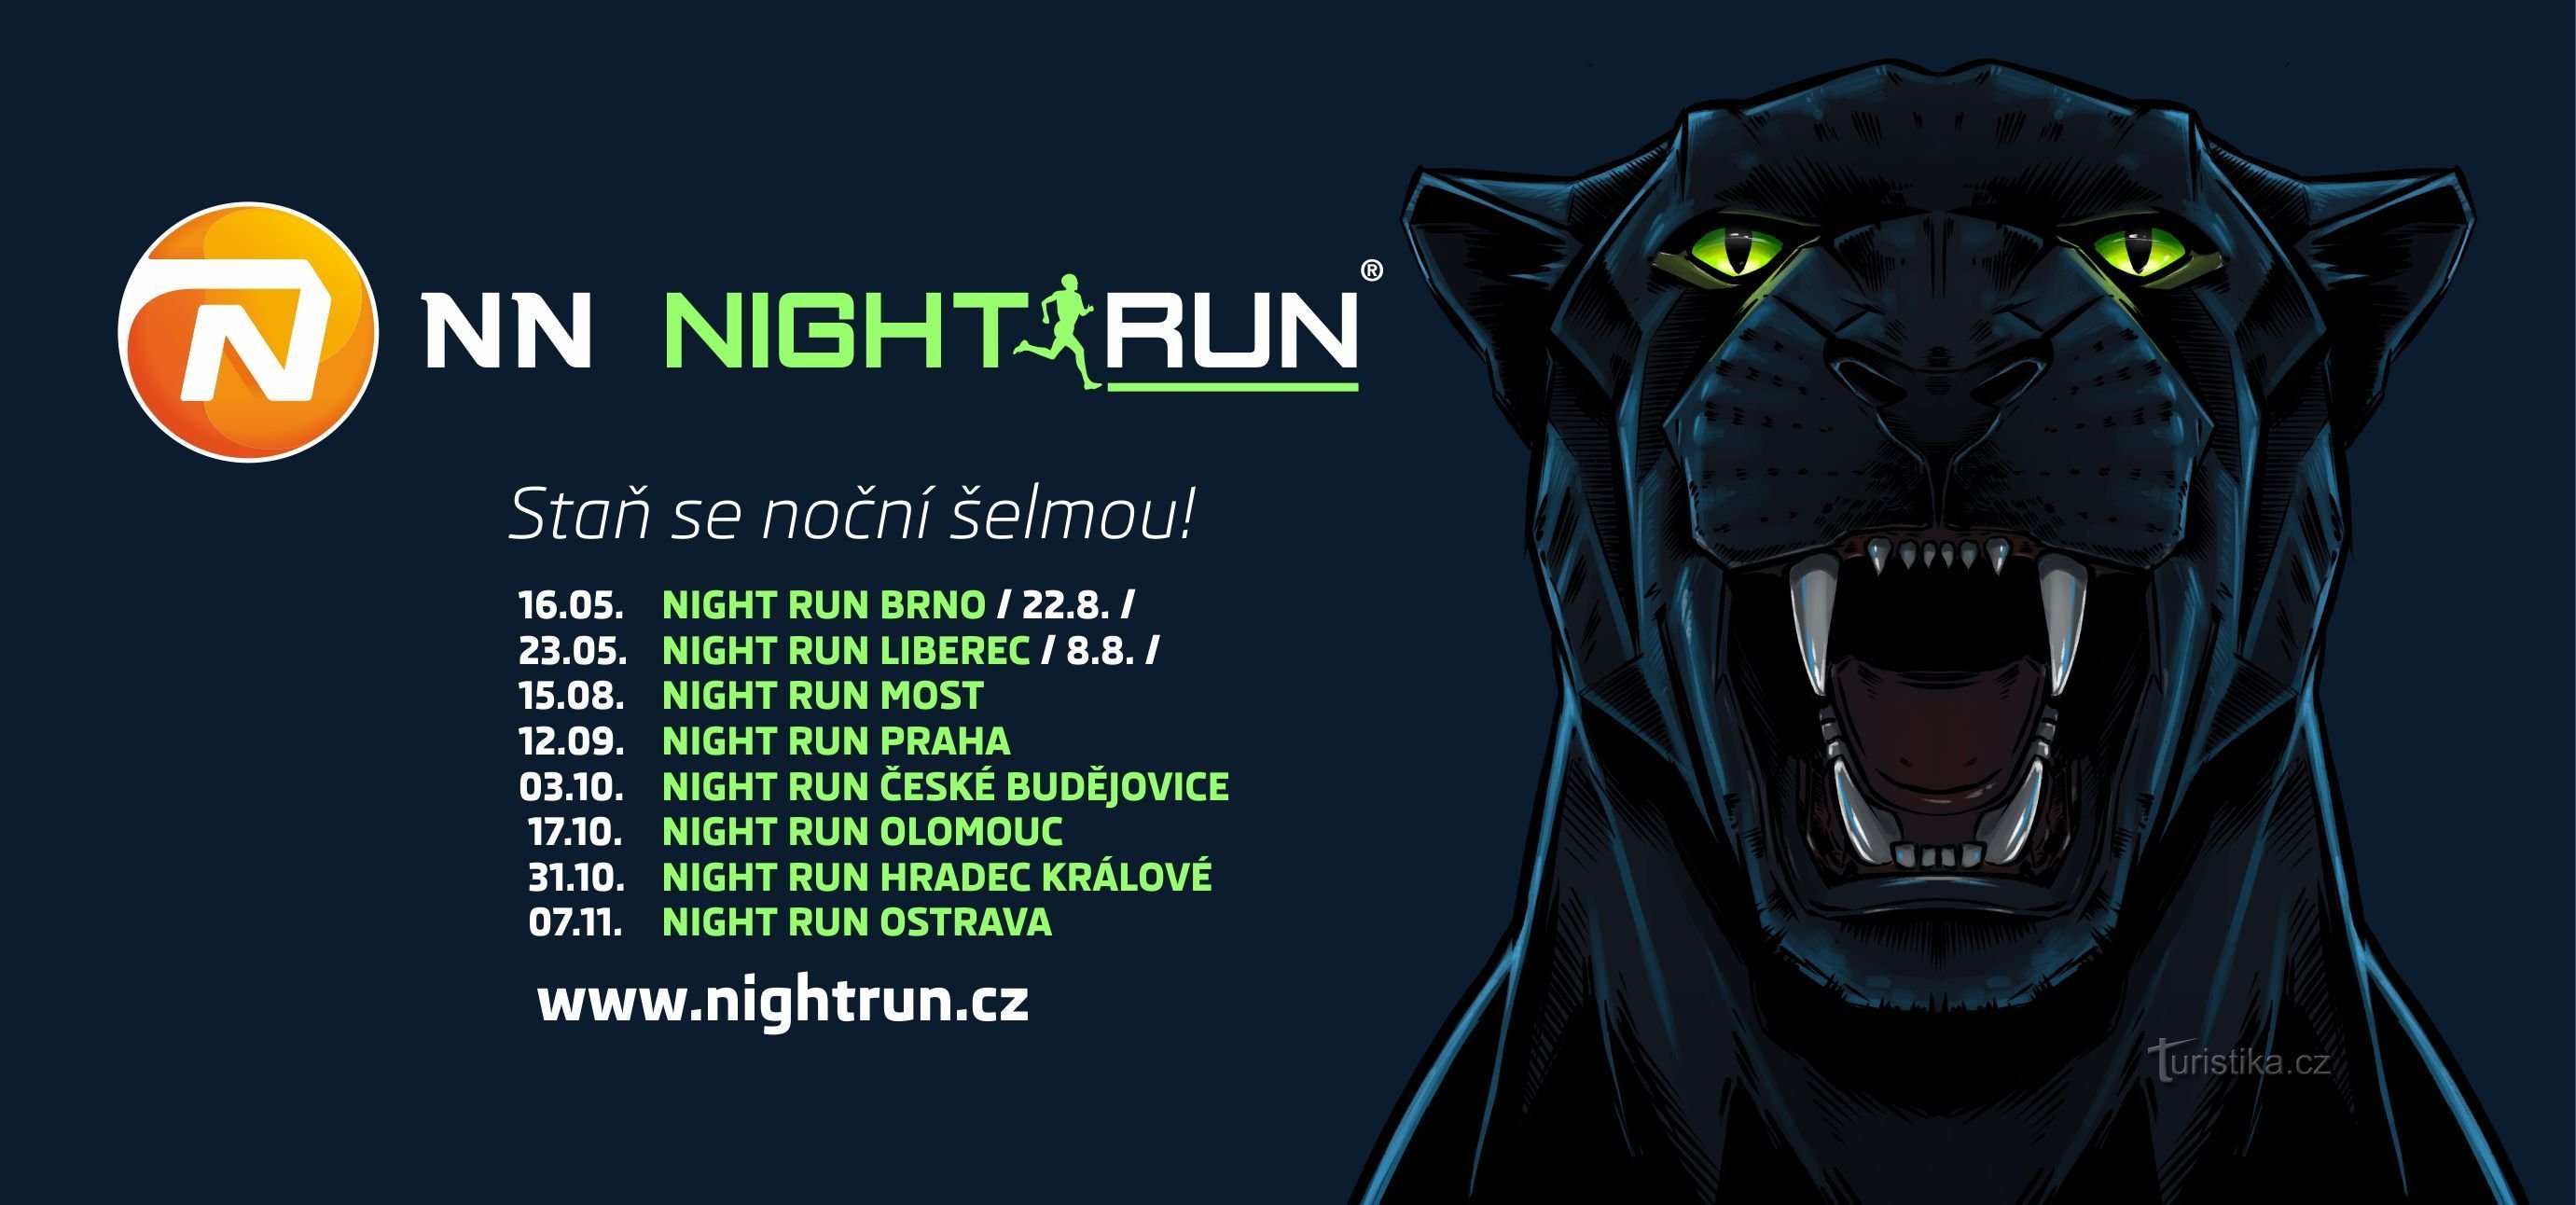 NN NIGHT RUN: Sedm důvodů, proč běžet